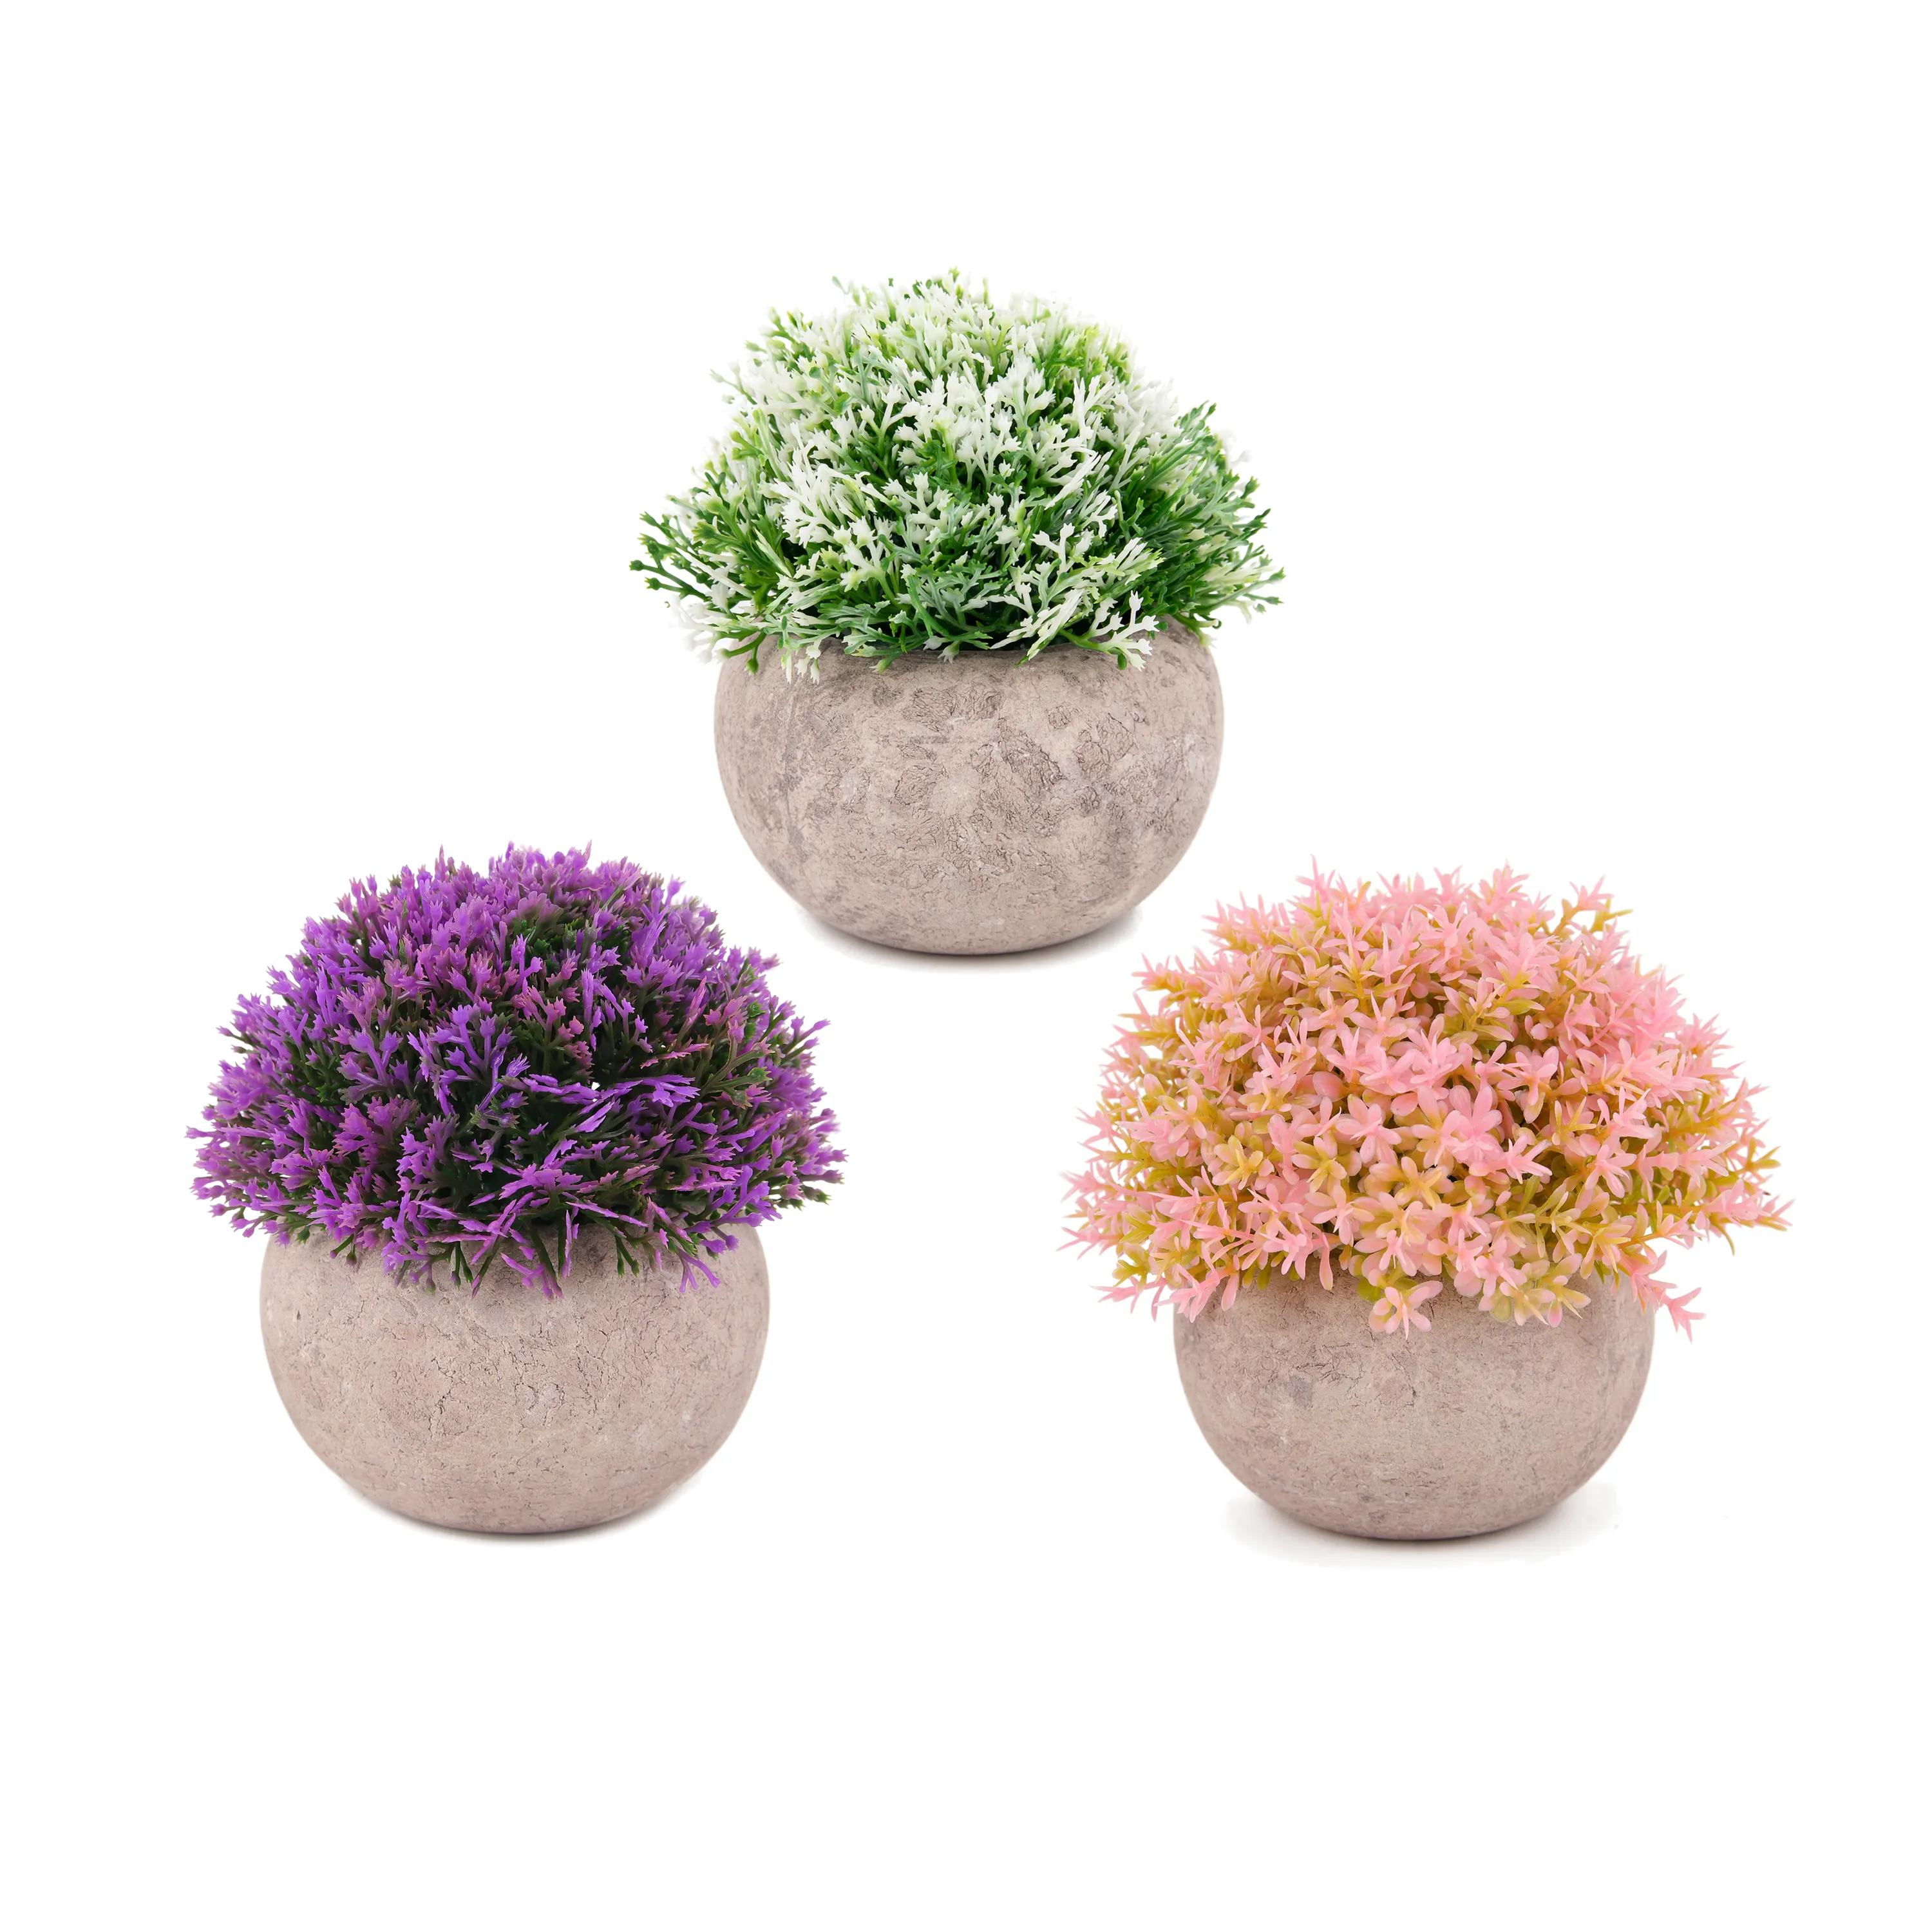 Toptan küçük çim bonsai bitkiler dekor plastik yapay mini hava bitkileri bonsai doğal ev dekorasyon için, 3 set